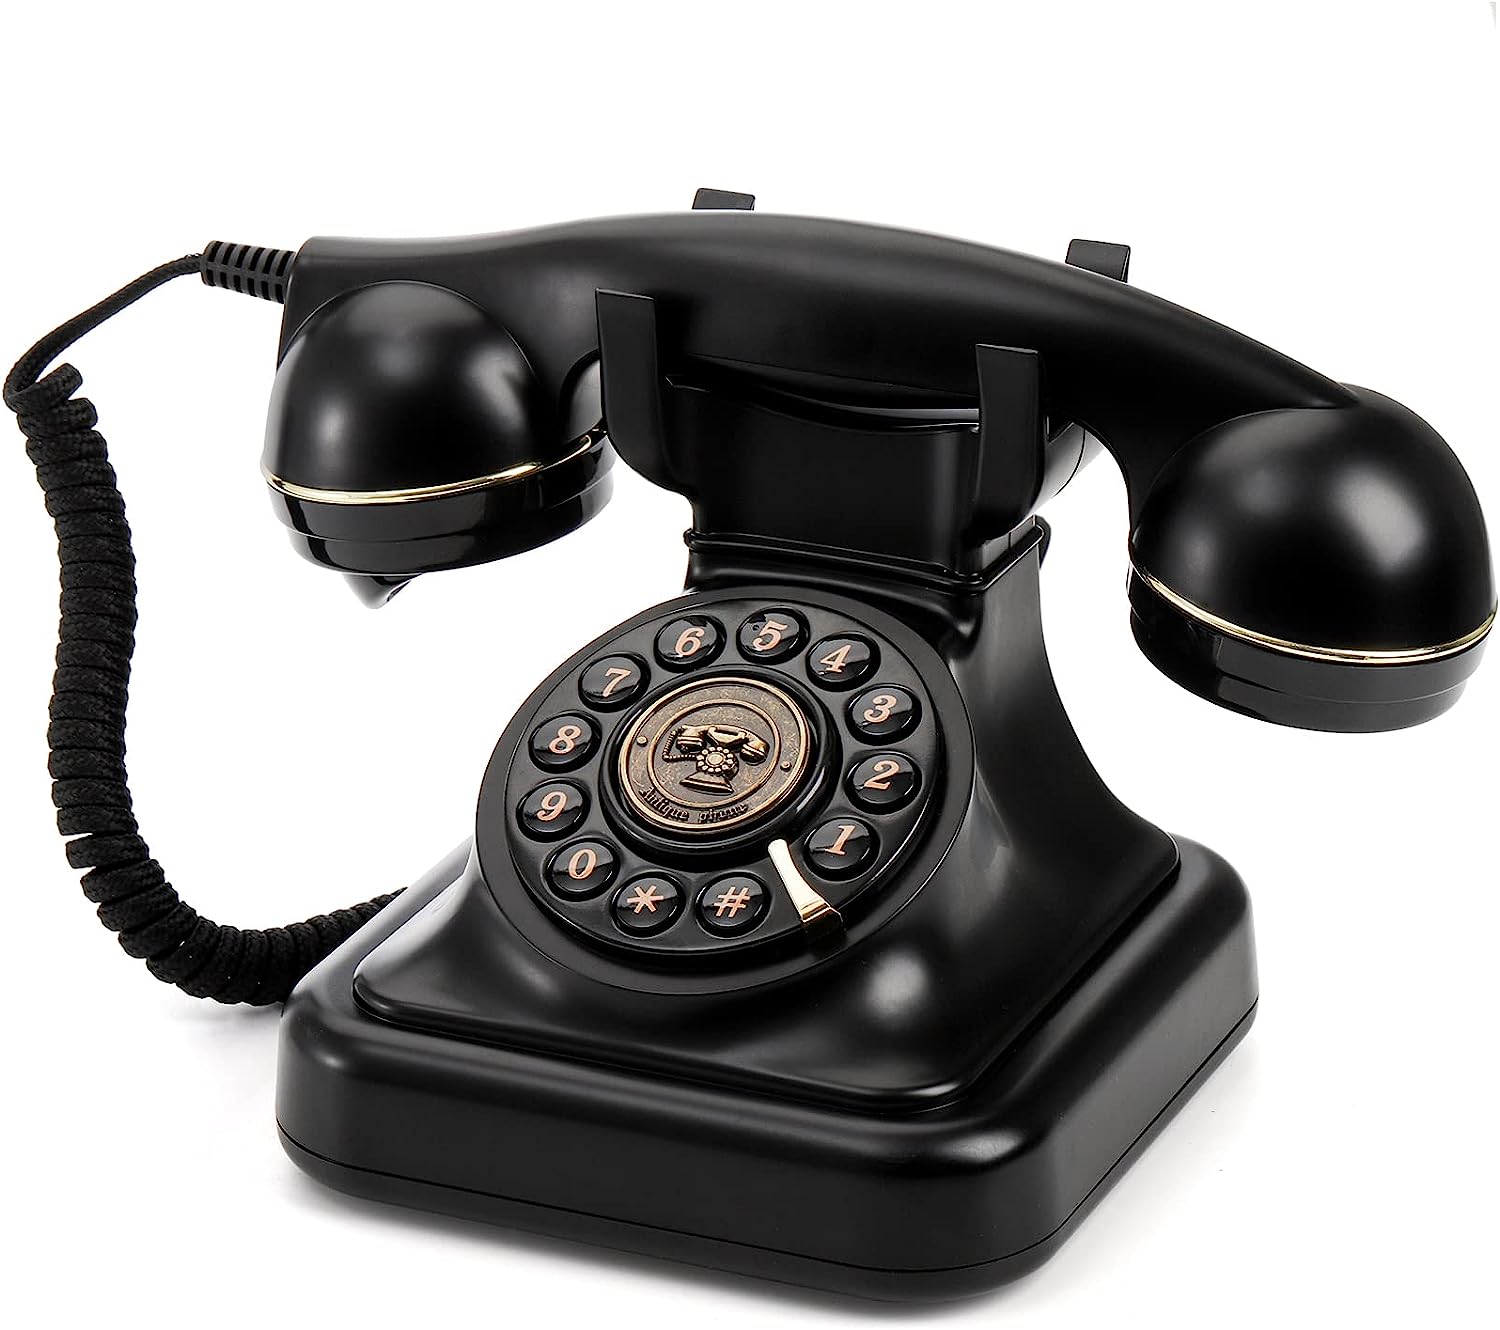 Teléfono tradicional retro con cable para teléfono fijo con indicador de  mensaje, escritorio analógico clásico 2500, base de metal, teléfono de